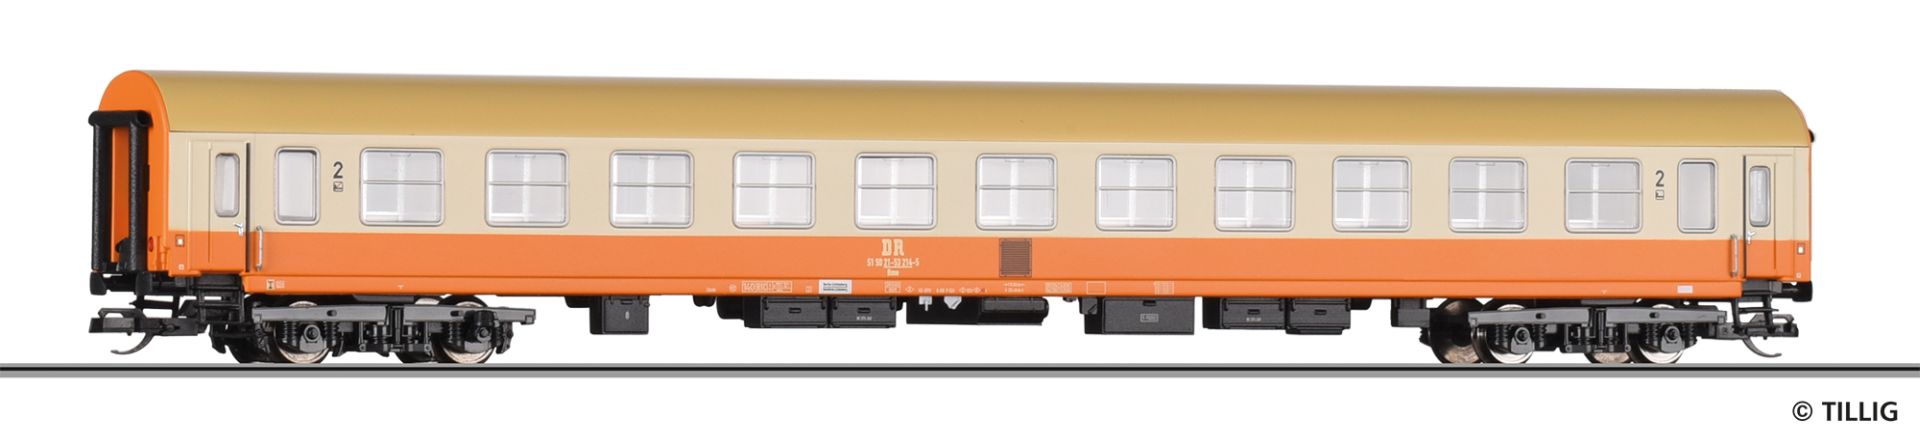 Tillig 501854 - Personenwagen 'Städteexpress', 2. Klasse, DR, Ep.IV